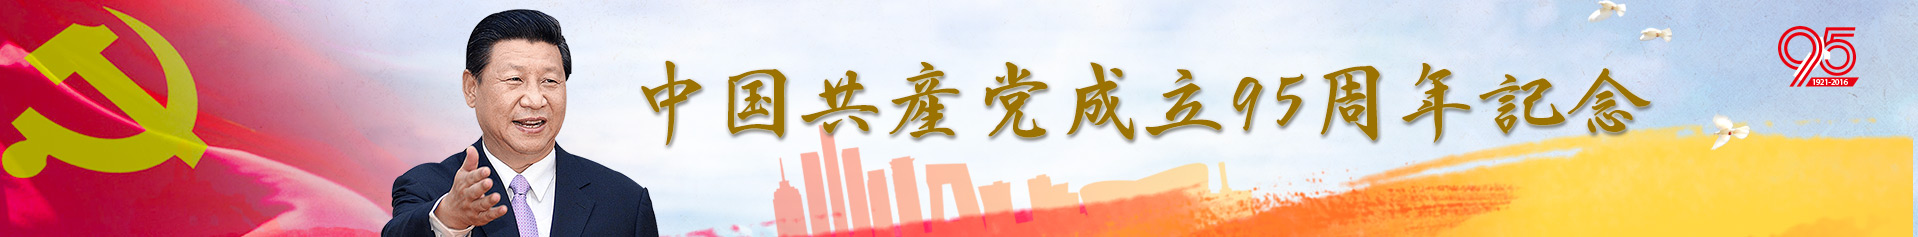 中国共产党成立95周年纪念